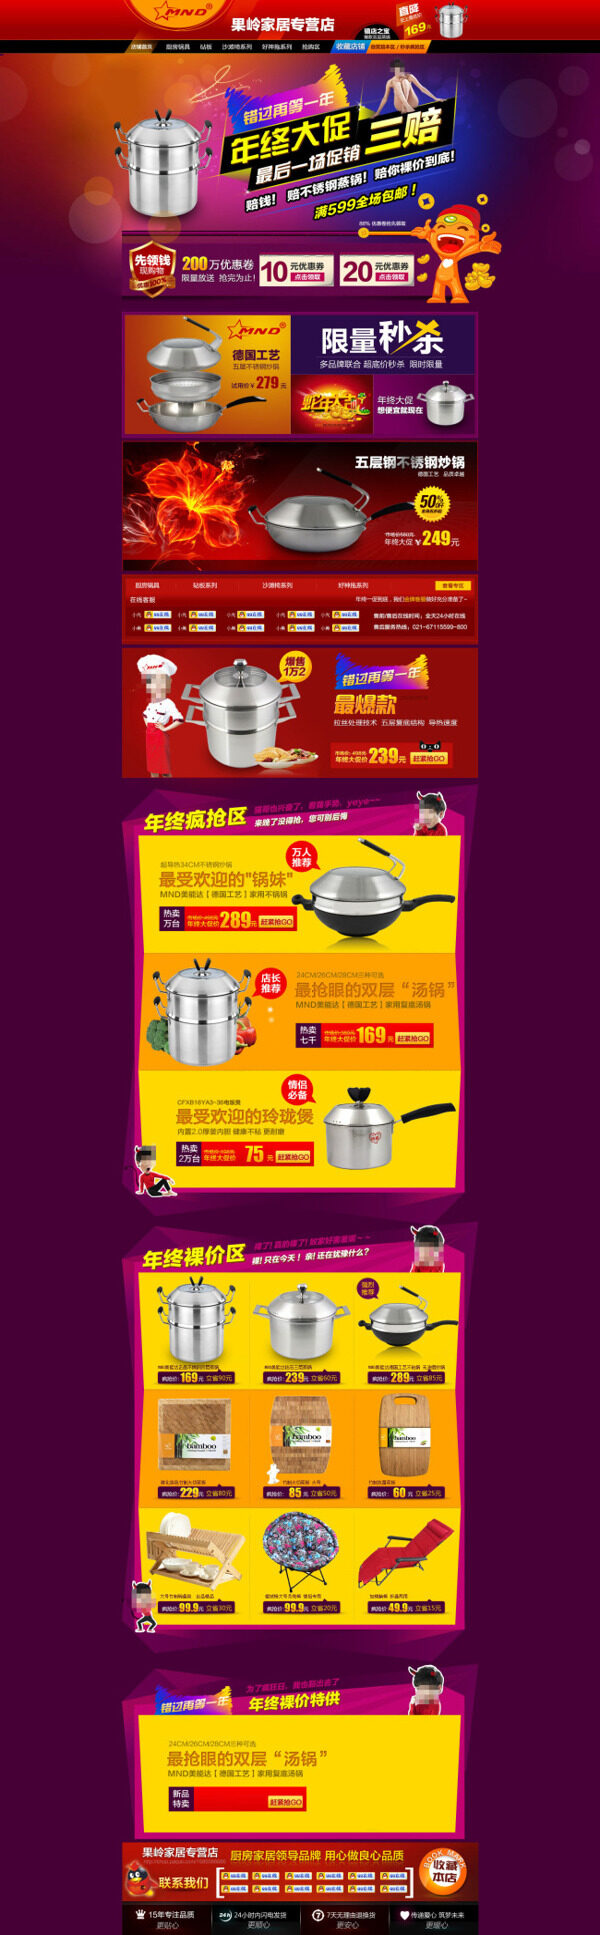 品牌厨房锅具展示促销首页海报